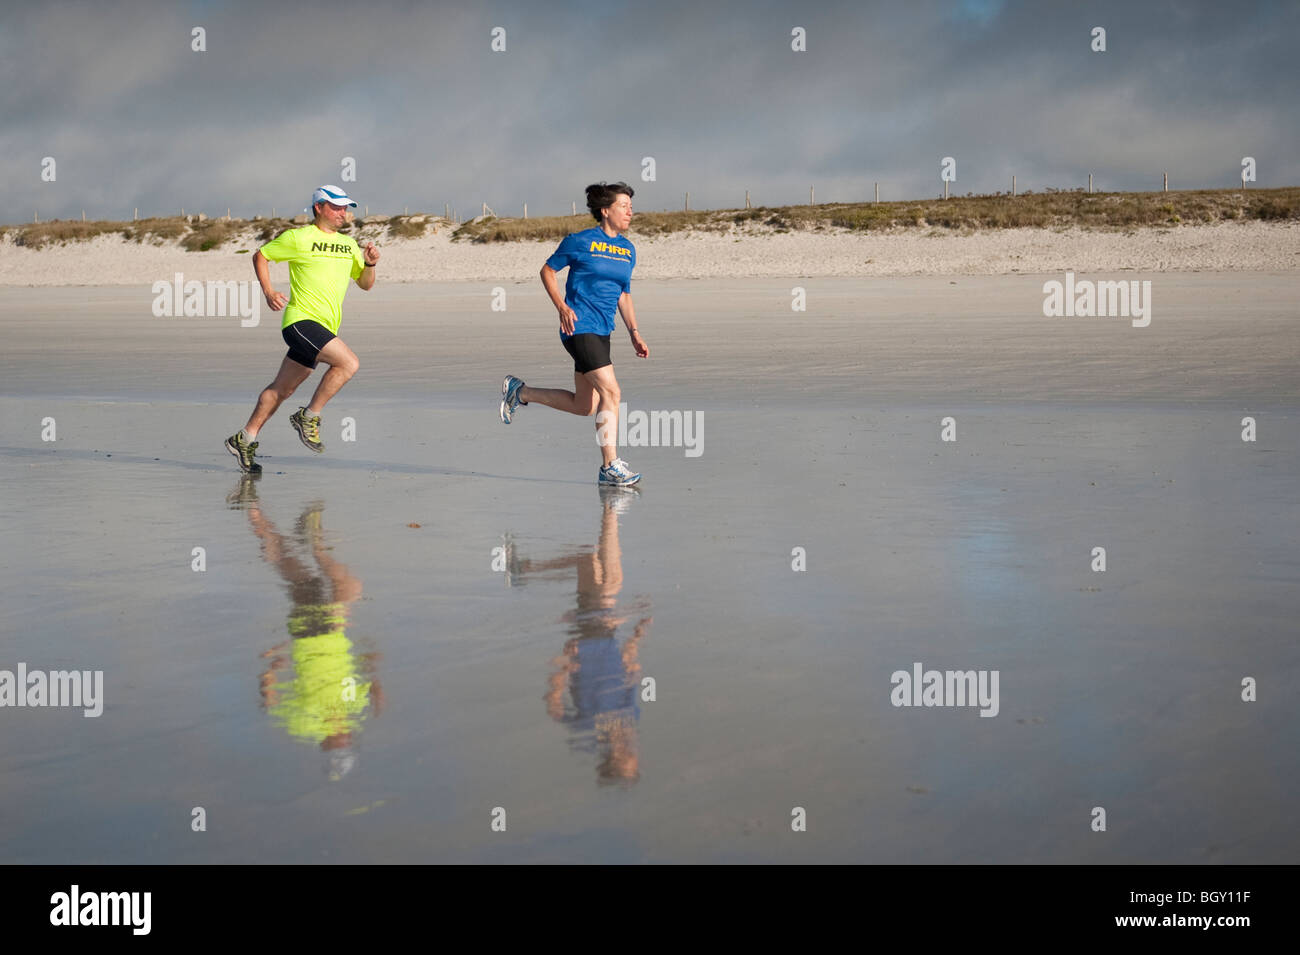 Due corridori prendere una corsa lungo una spiaggia di sabbia in Francia, loro vivacemente colorato t-shirts riflessa nella sabbia bagnata. su GR34 percorso Foto Stock